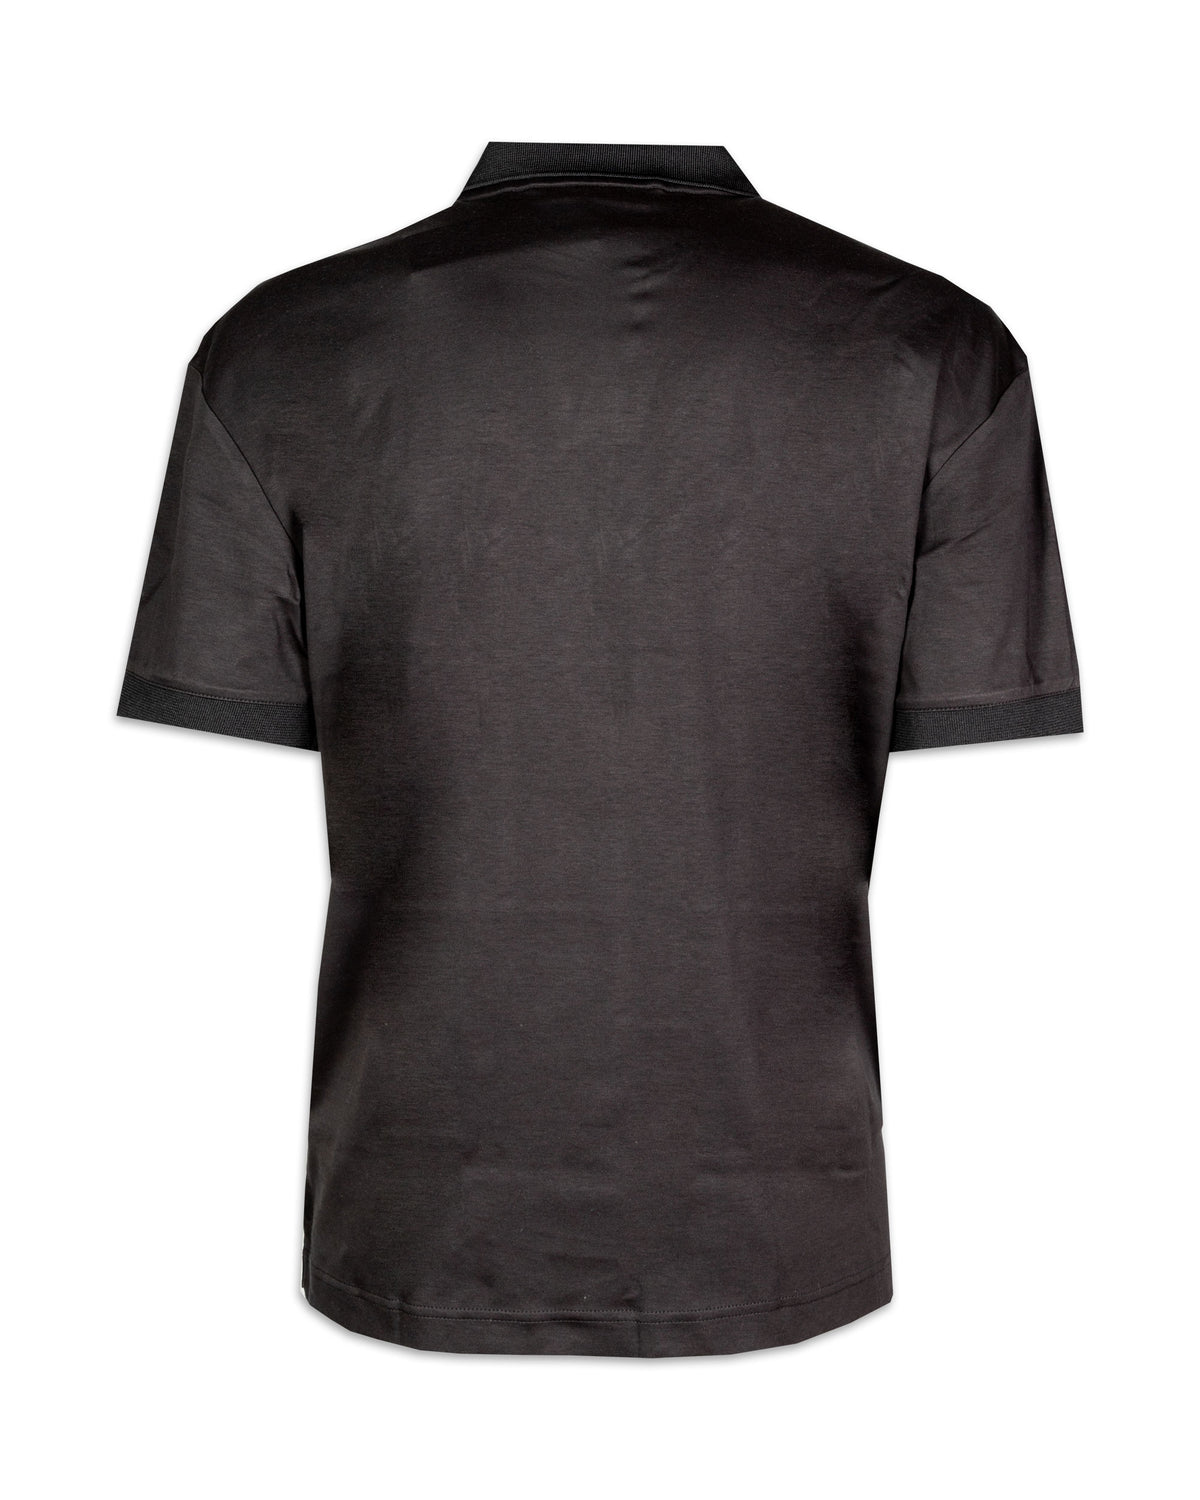 Man Polo Shirt Calvin Klein Smooth Cotton Open Placket Black